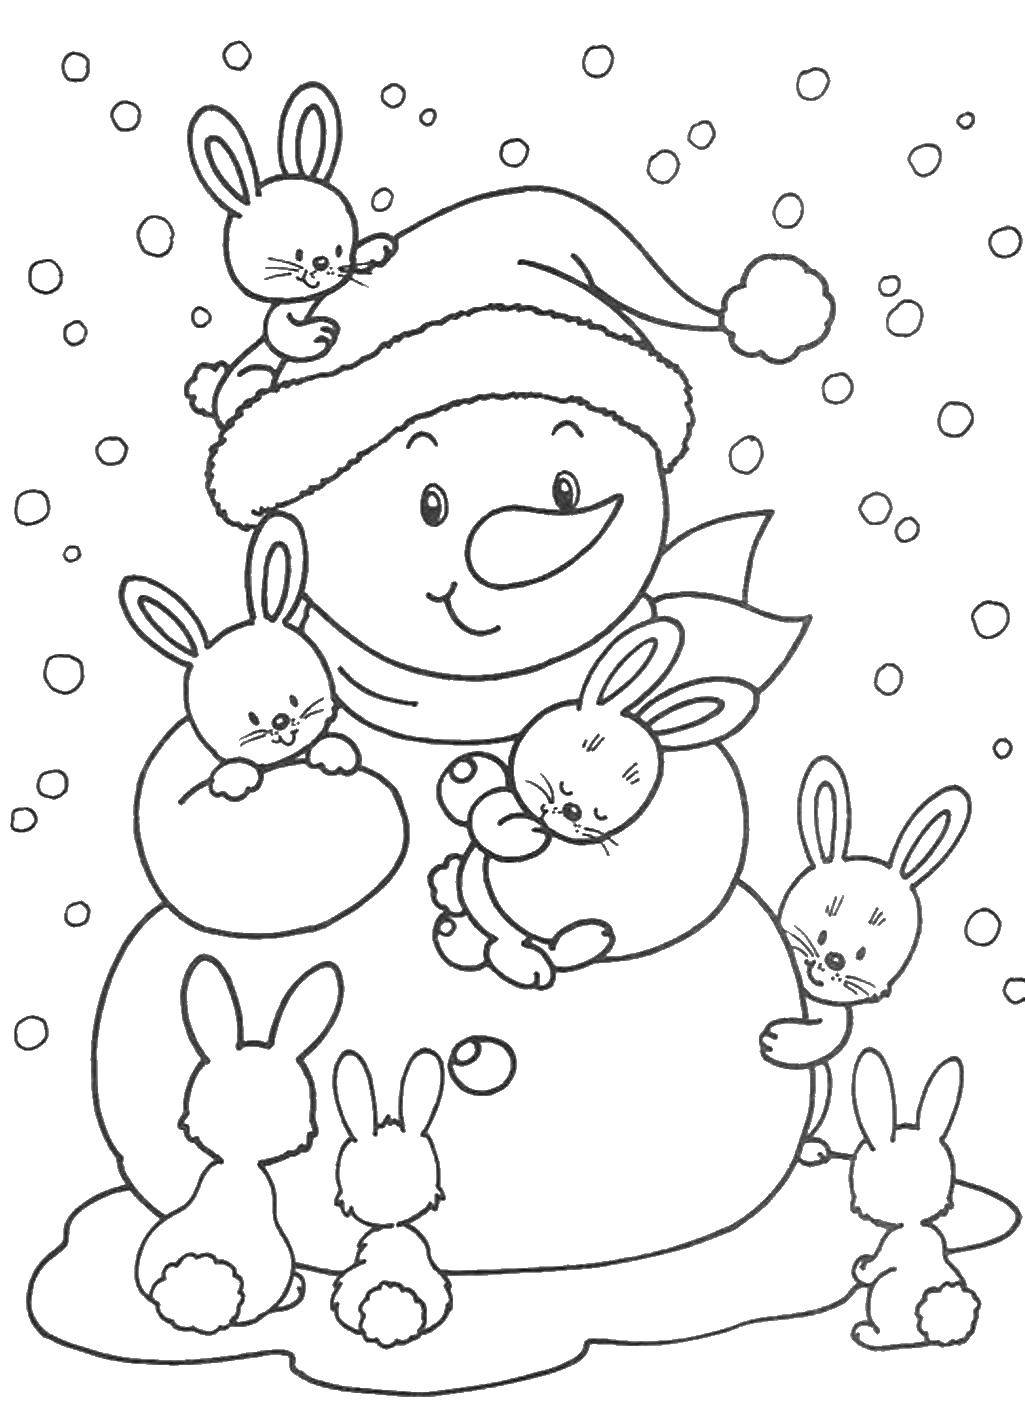 Опис: розмальовки  Зайчики навколо сніговика. Категорія: розмальовки зима. Теги:  зима, сніговик, зайчики.